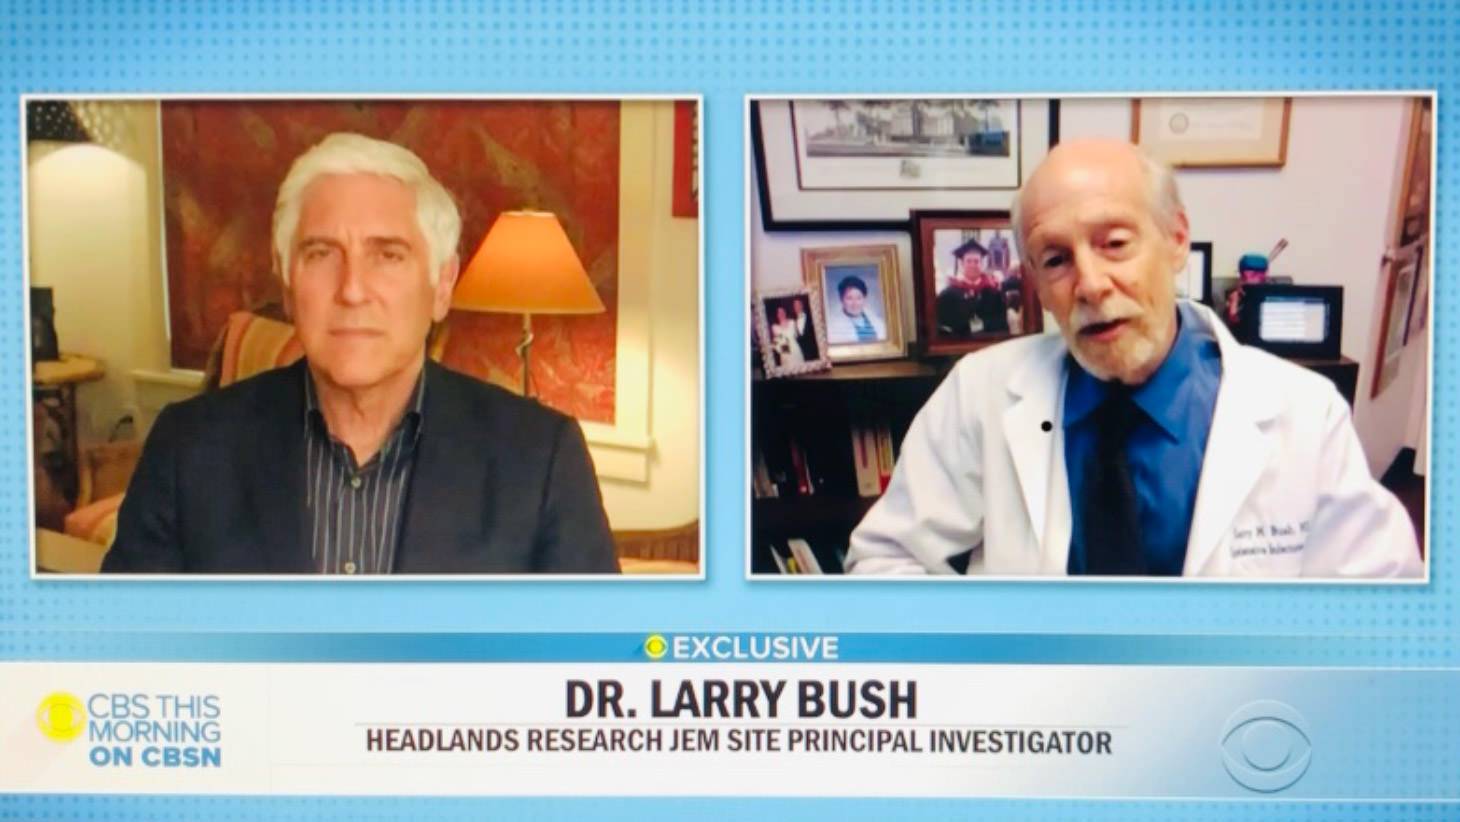 Dr. Larry Bush